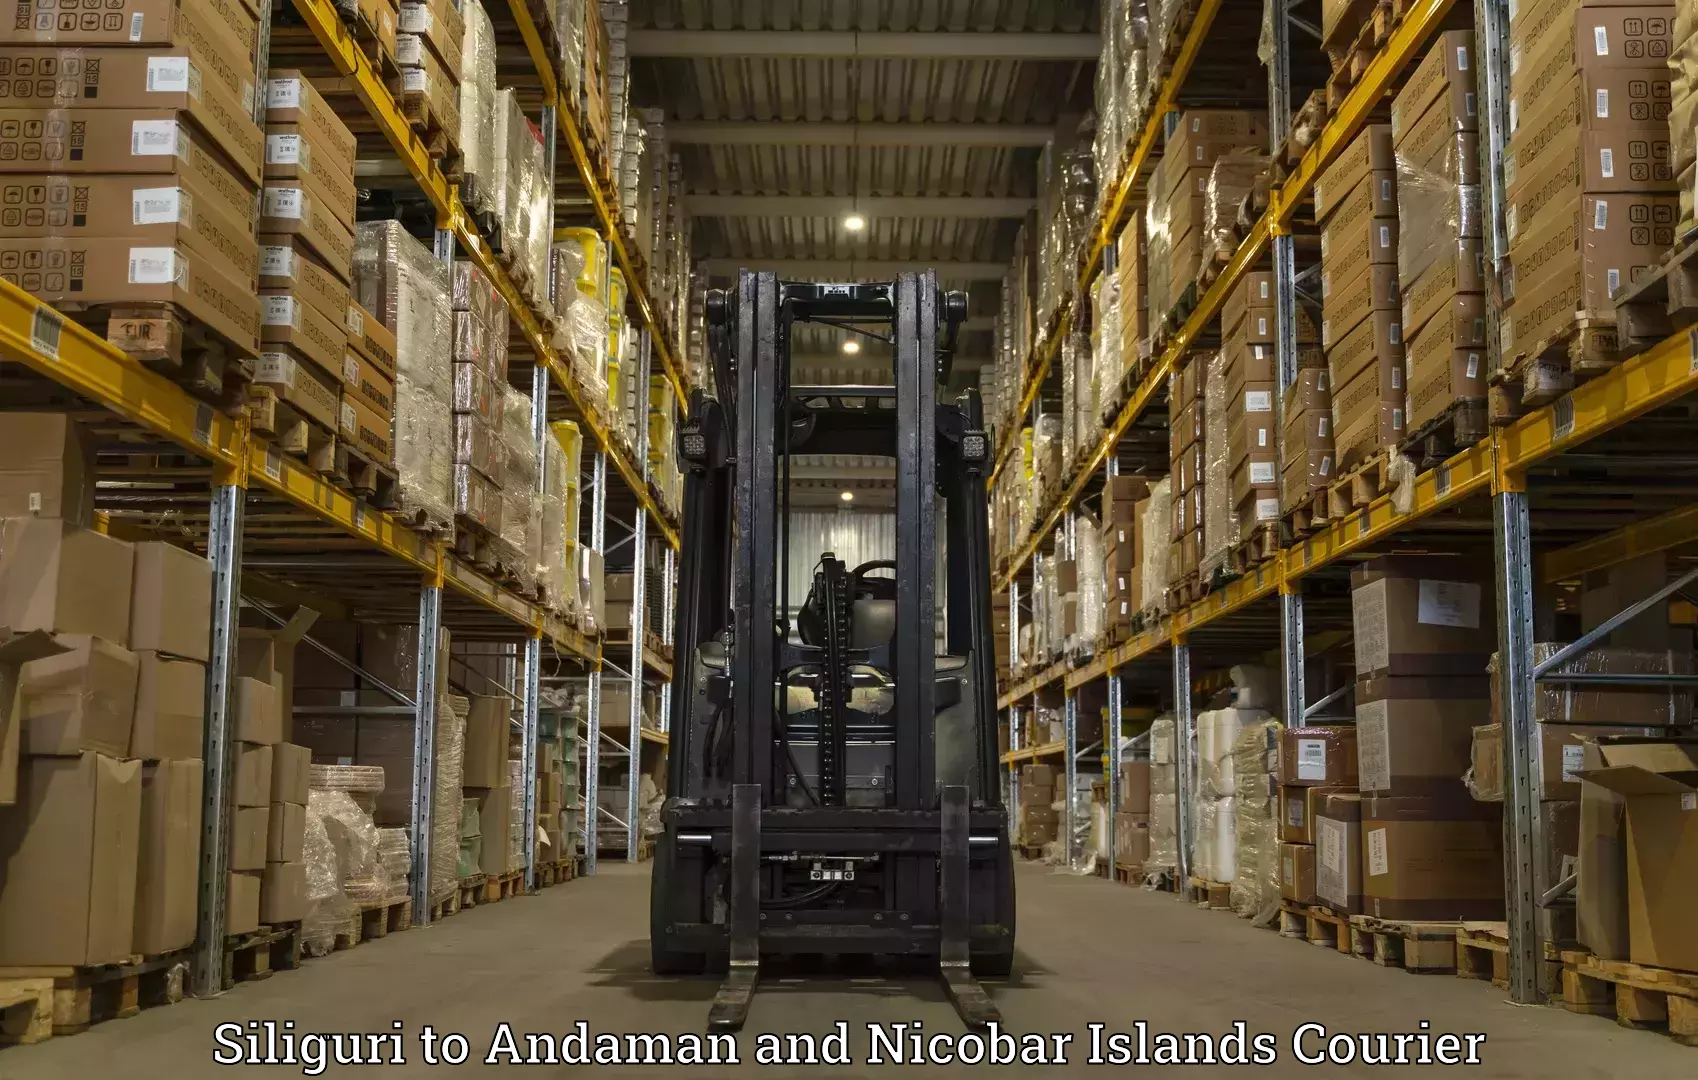 Reliable logistics providers Siliguri to Andaman and Nicobar Islands